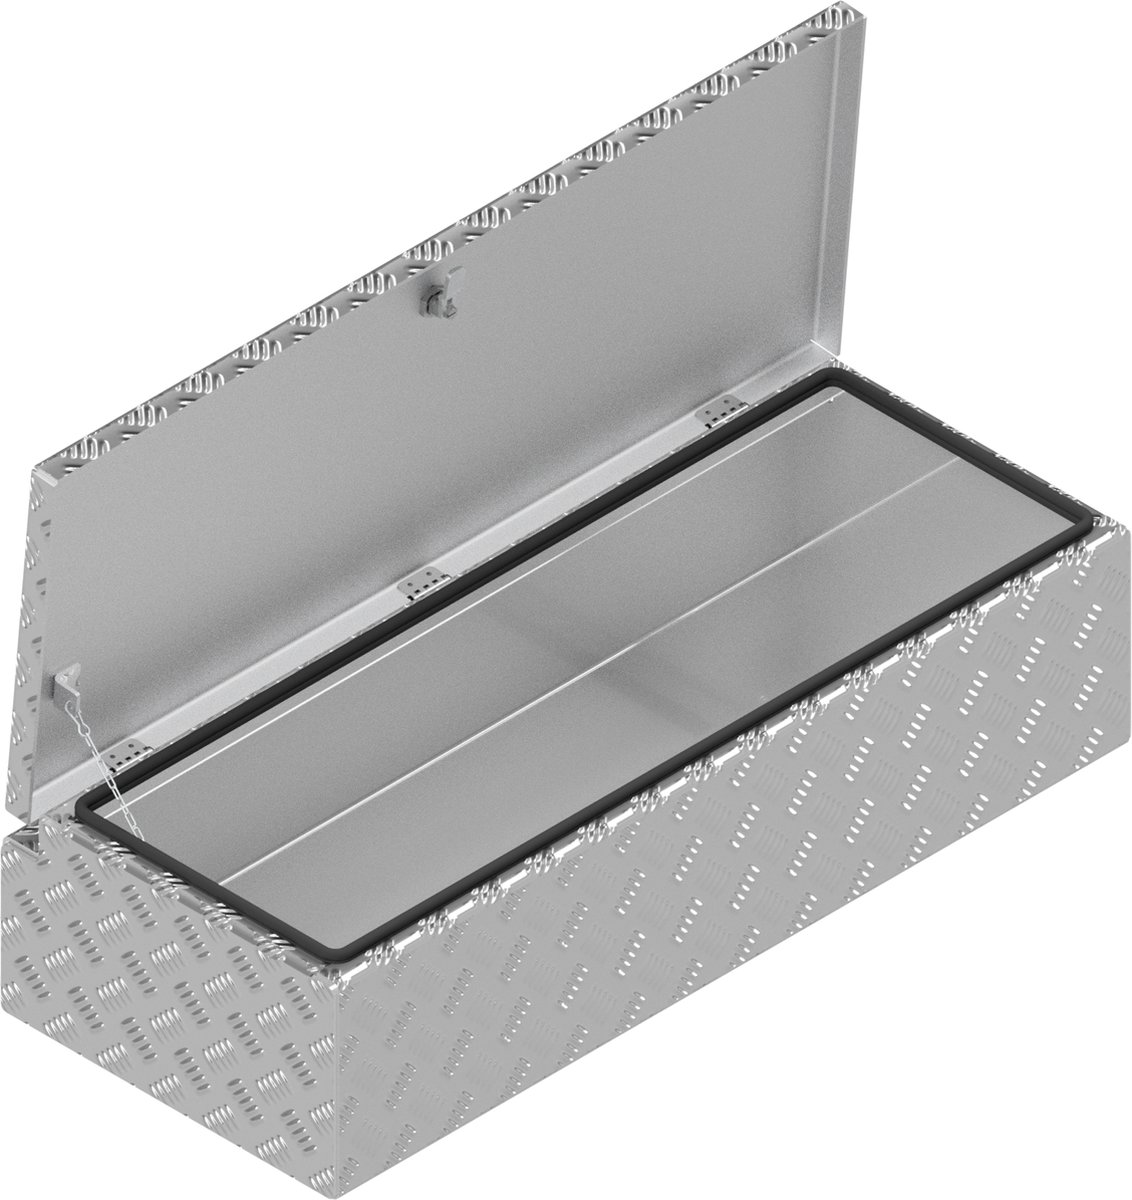 DE HAAN BOX HS - 900x380x230 mm - waterdichte en stofdichte aluminium traanplaat disselkist - voorzien van vlinderslot, spansluiting of t-sluiting